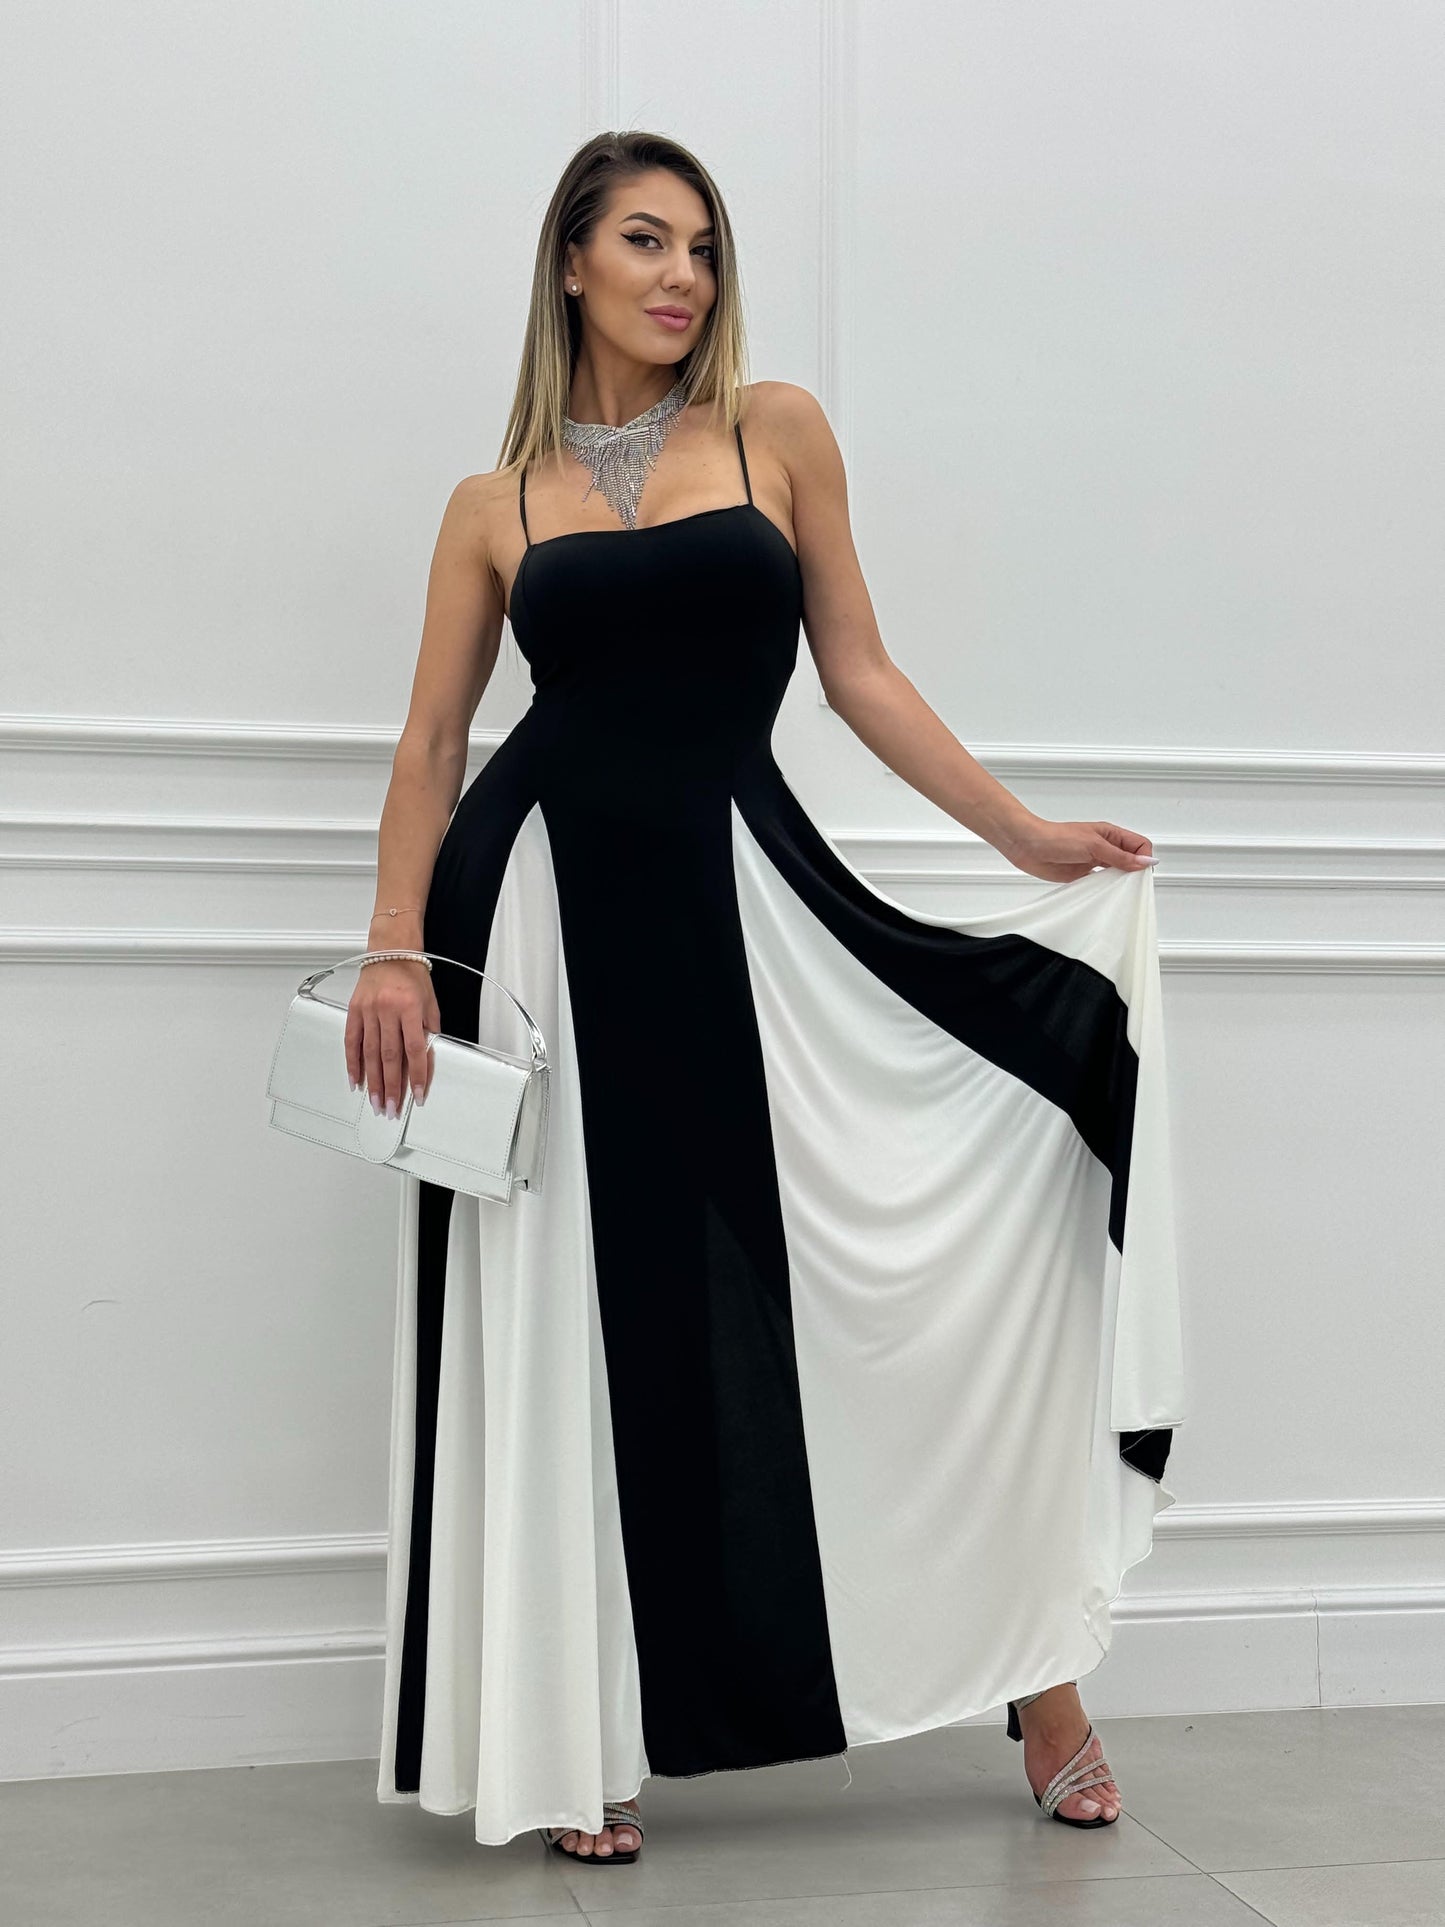 Ponadczasowa i elegancka tiulowa sukienka maxi z panelami i dekoltem w kształcie litery A